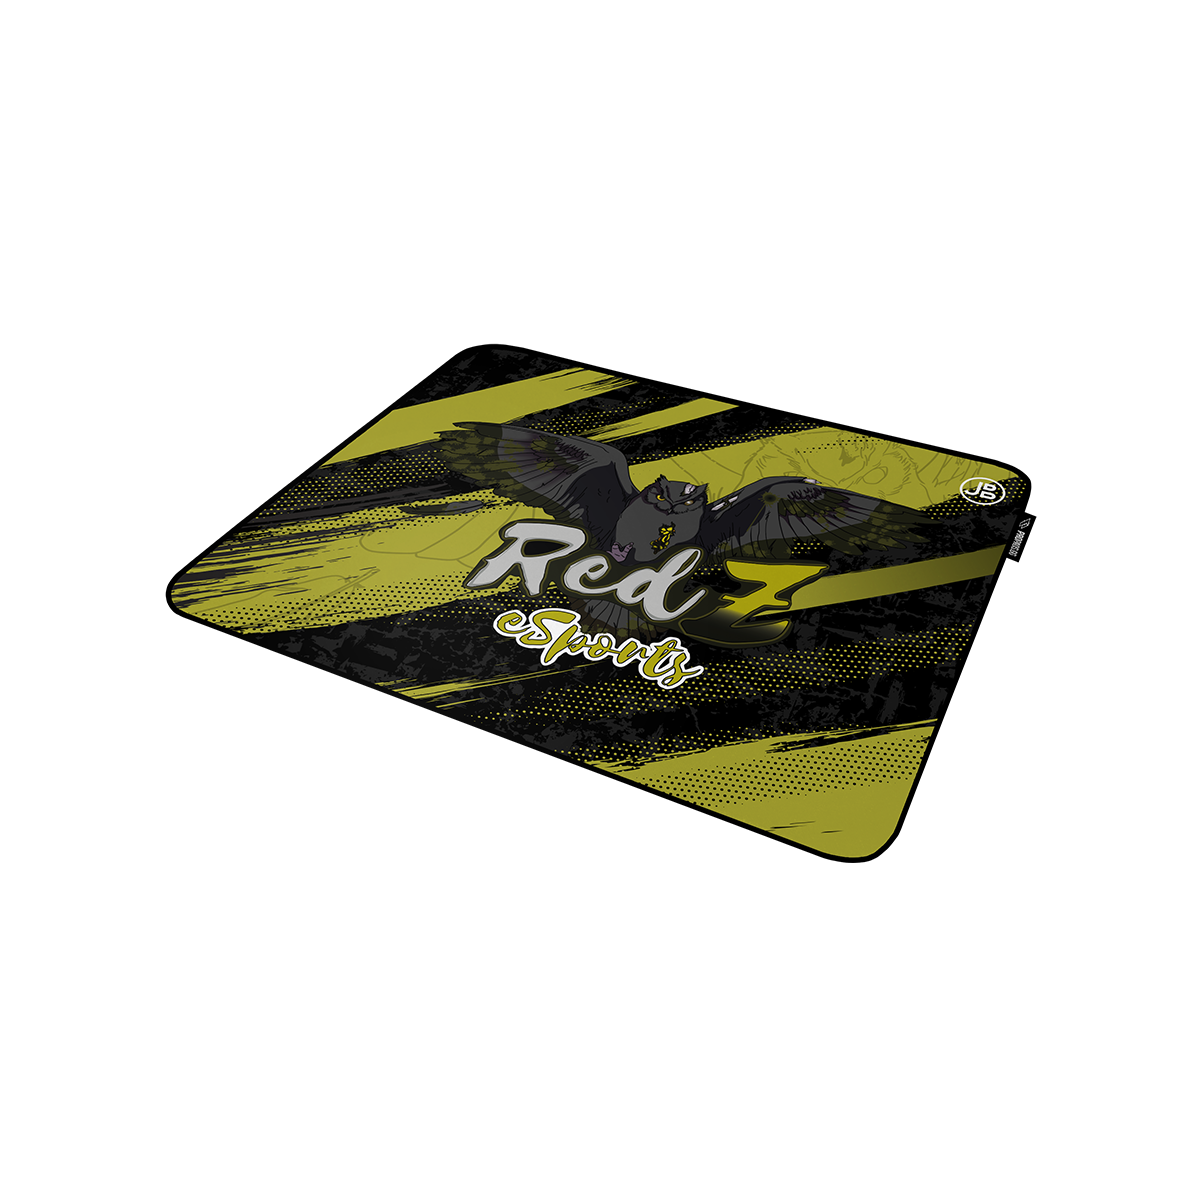 REDZ ESPORTS - Mousepad Gold